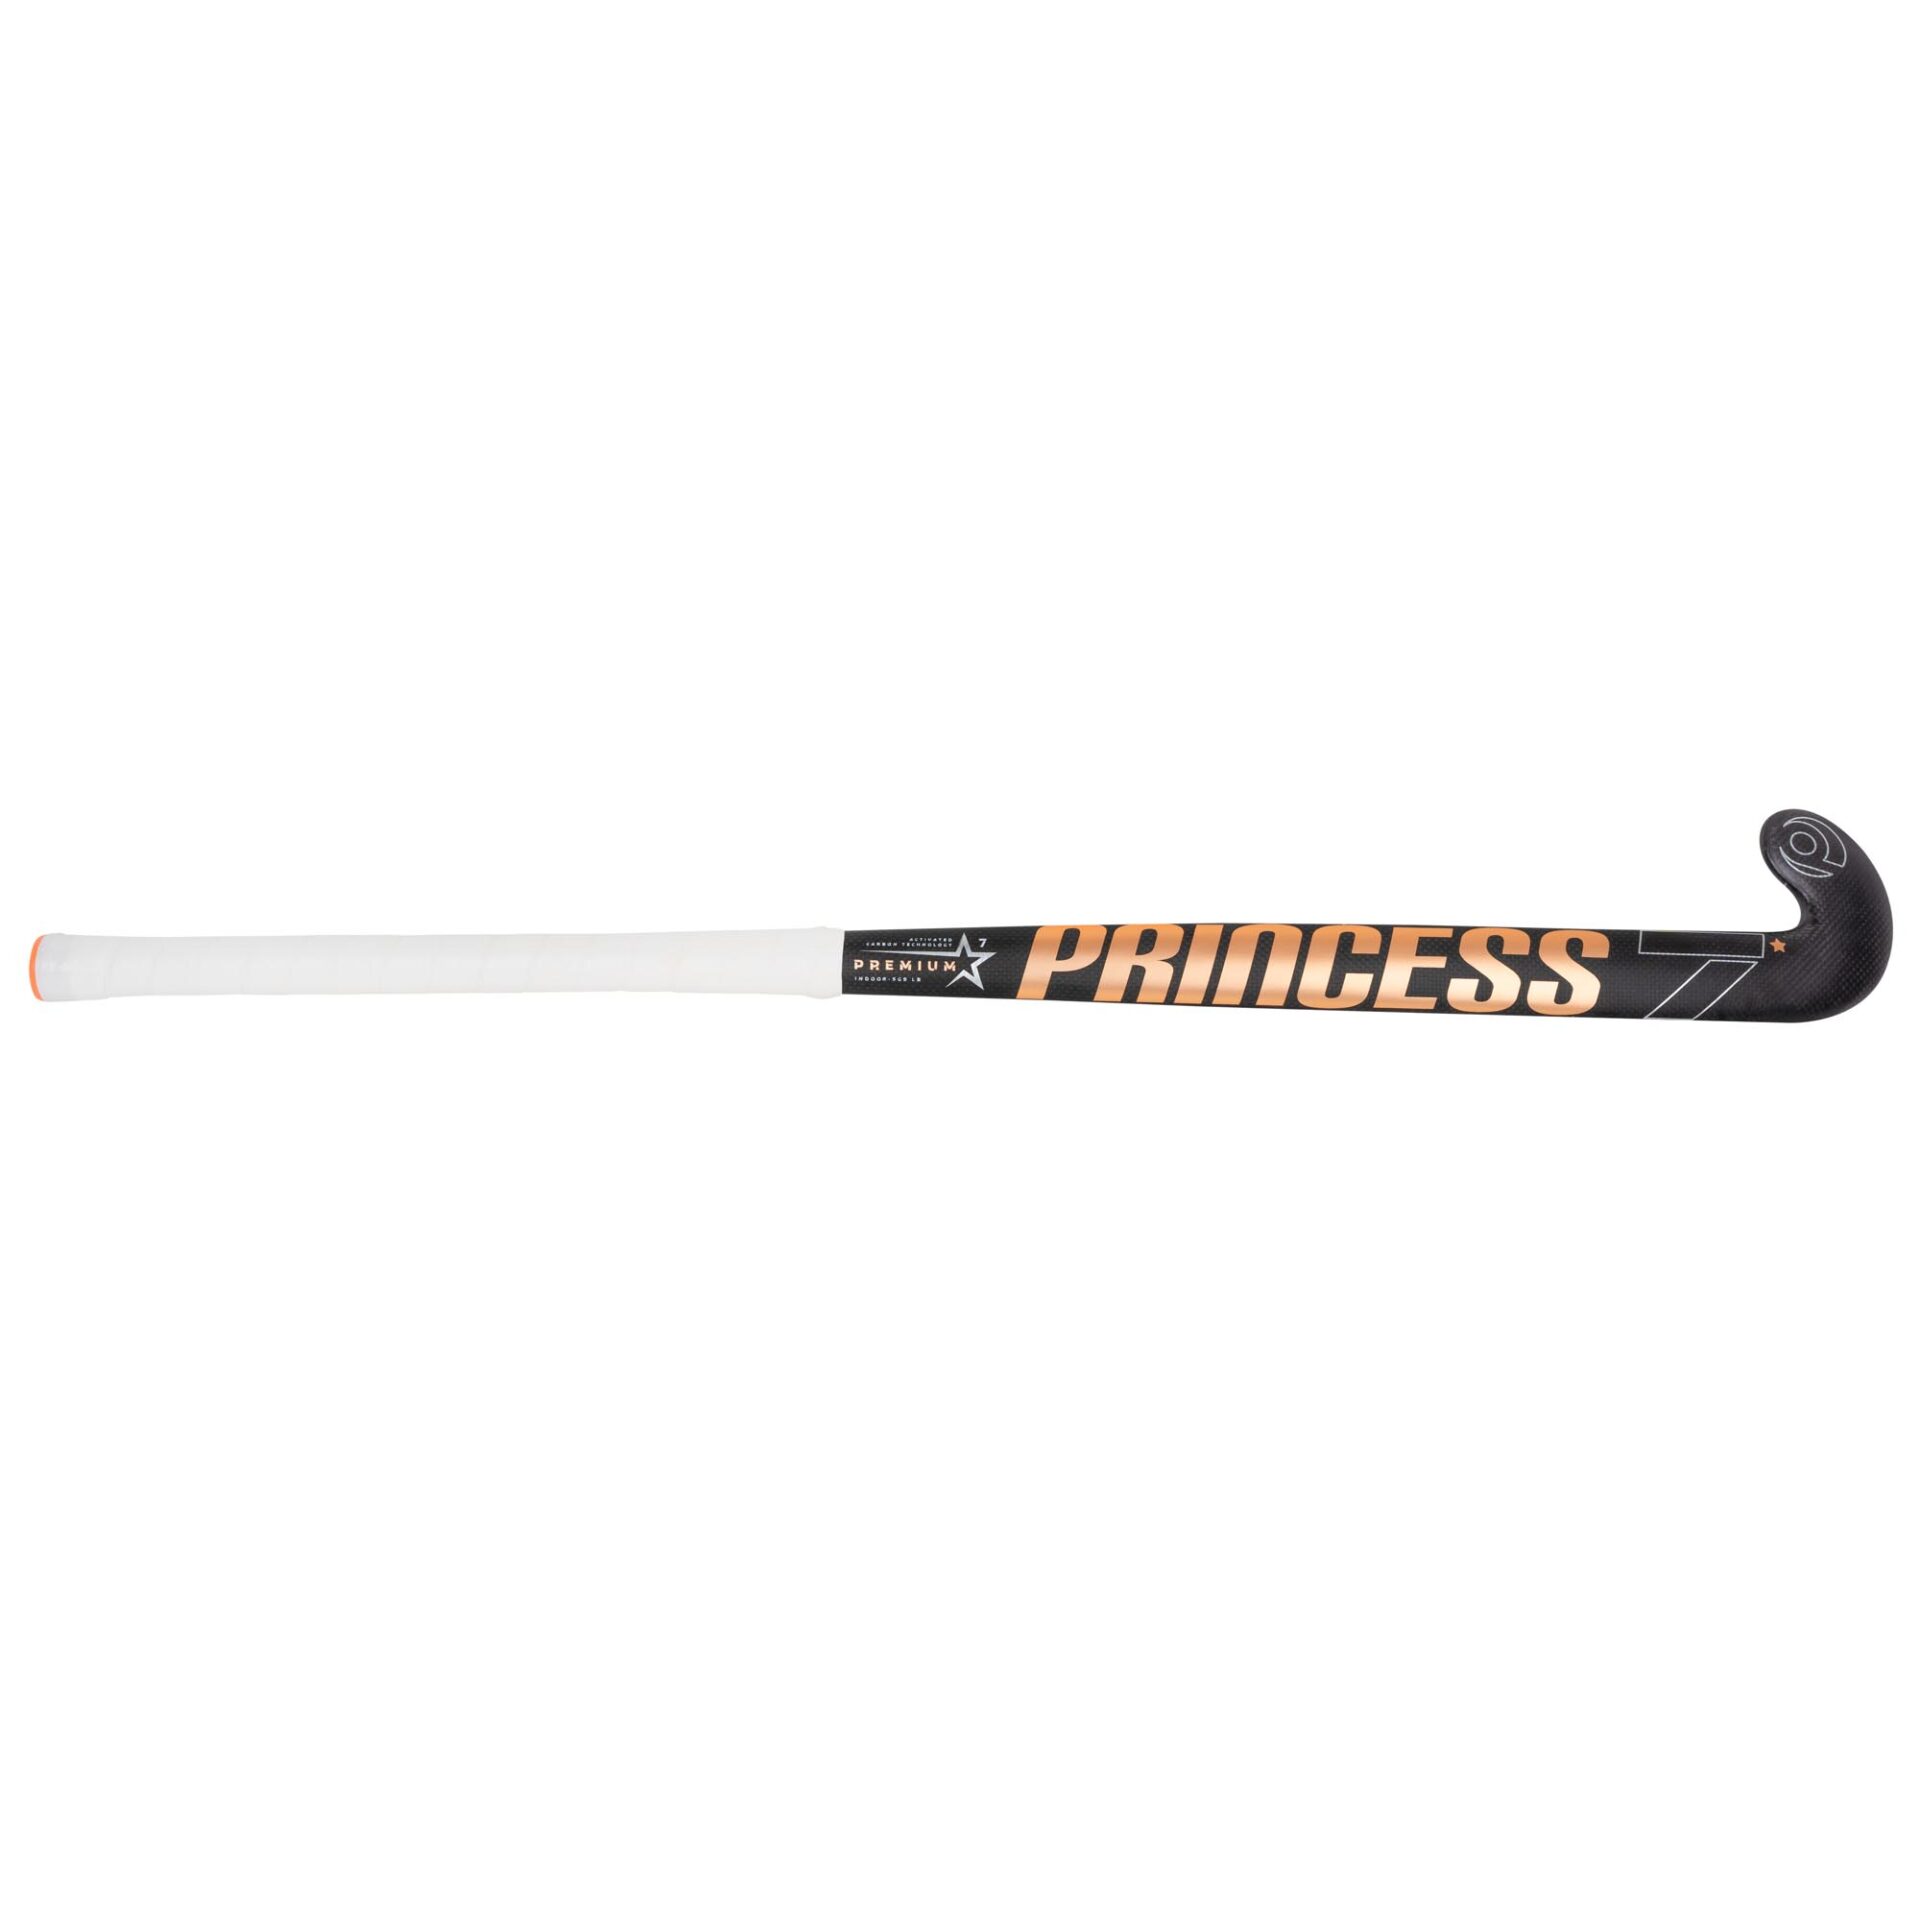 PRINCESS 7 STAR SG9 Composite Field Hockey Stick with free bag & grip 36.5 